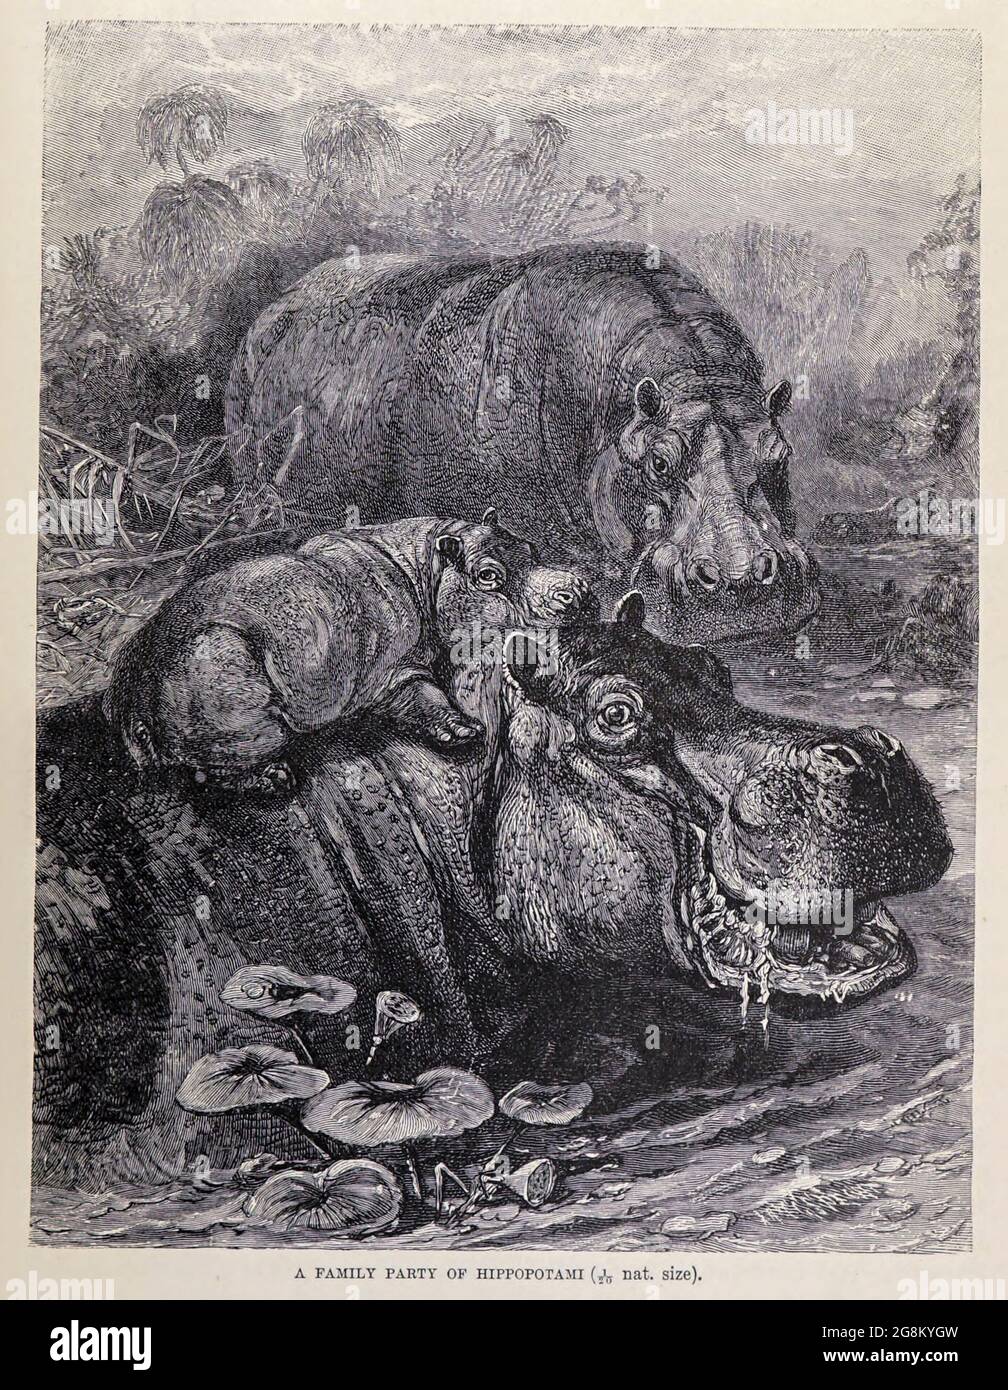 Eine Familienfeier von Hippopotami. Der Hippopotamus (Hippopotamus amphibius), auch Hippo genannt, ist ein großes, meist pflanzenfressendes, semiaquatisches Säugetier und Huftier, das im subsaharischen Afrika beheimatet ist. Aus dem Buch ' Royal Natural History ' Band 2 herausgegeben von Richard Lydekker, veröffentlicht in London von Frederick Warne & Co im Jahr 1893-1894 Stockfoto